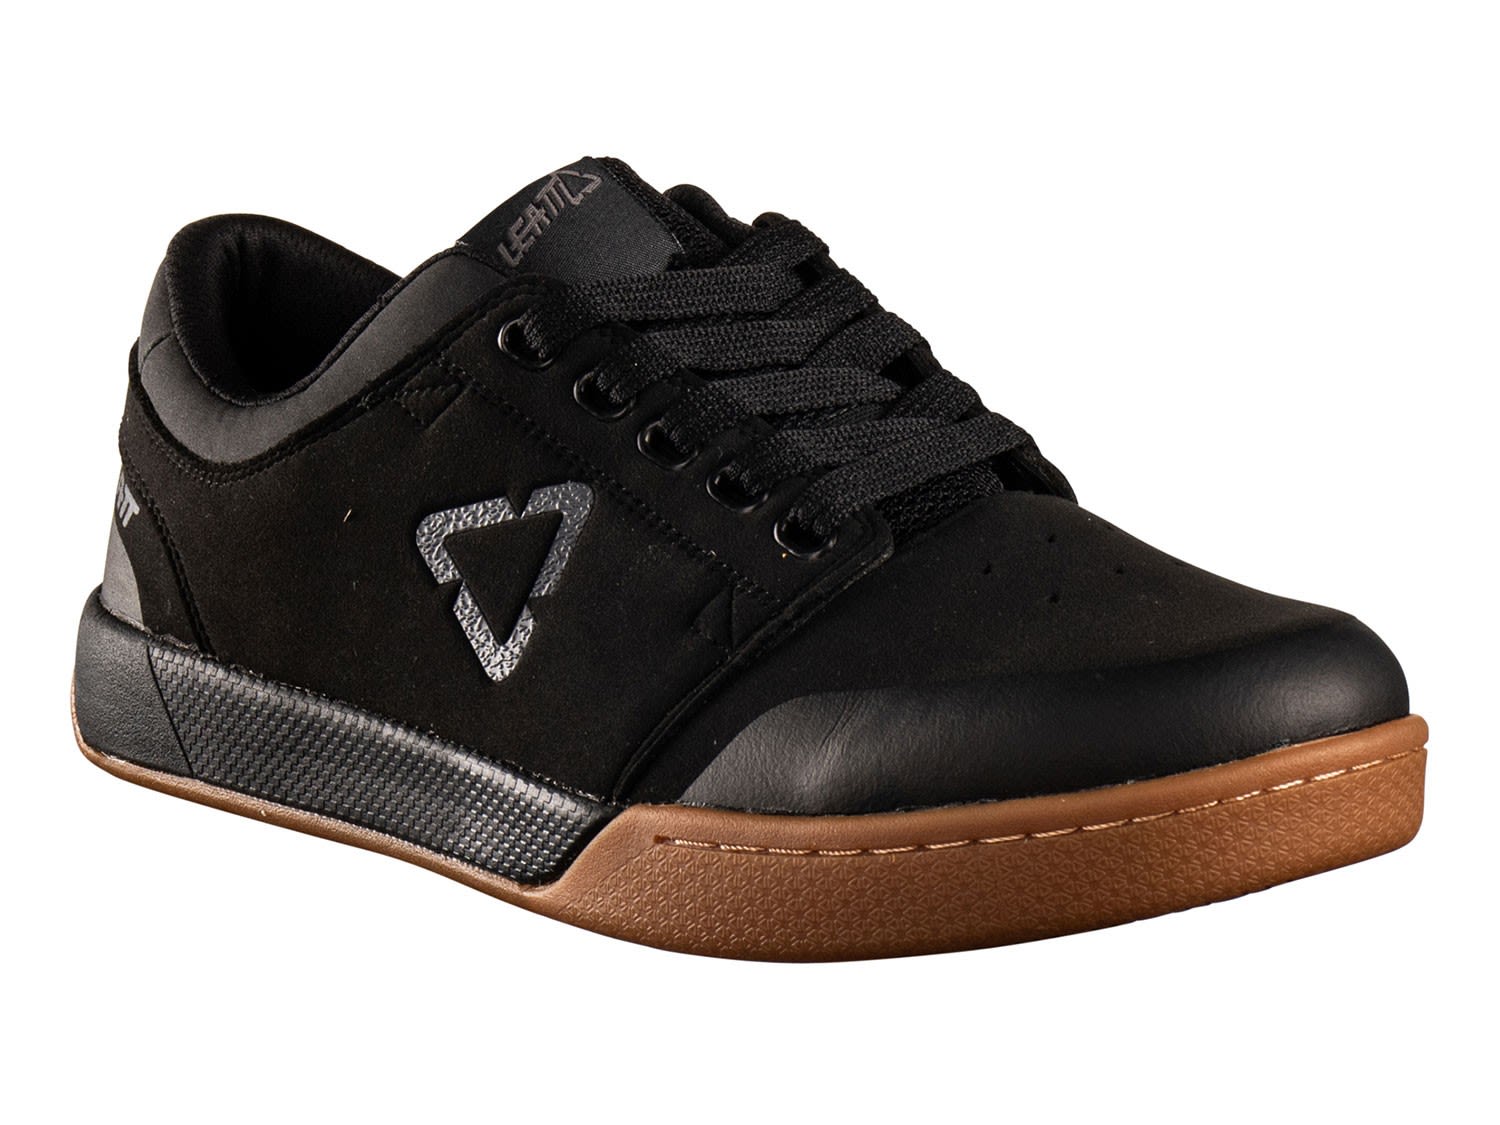 Leatt 2-0 Flatpedal Shoe Schwarz- Freeride- Grsse EU 38-5 - Farbe Black